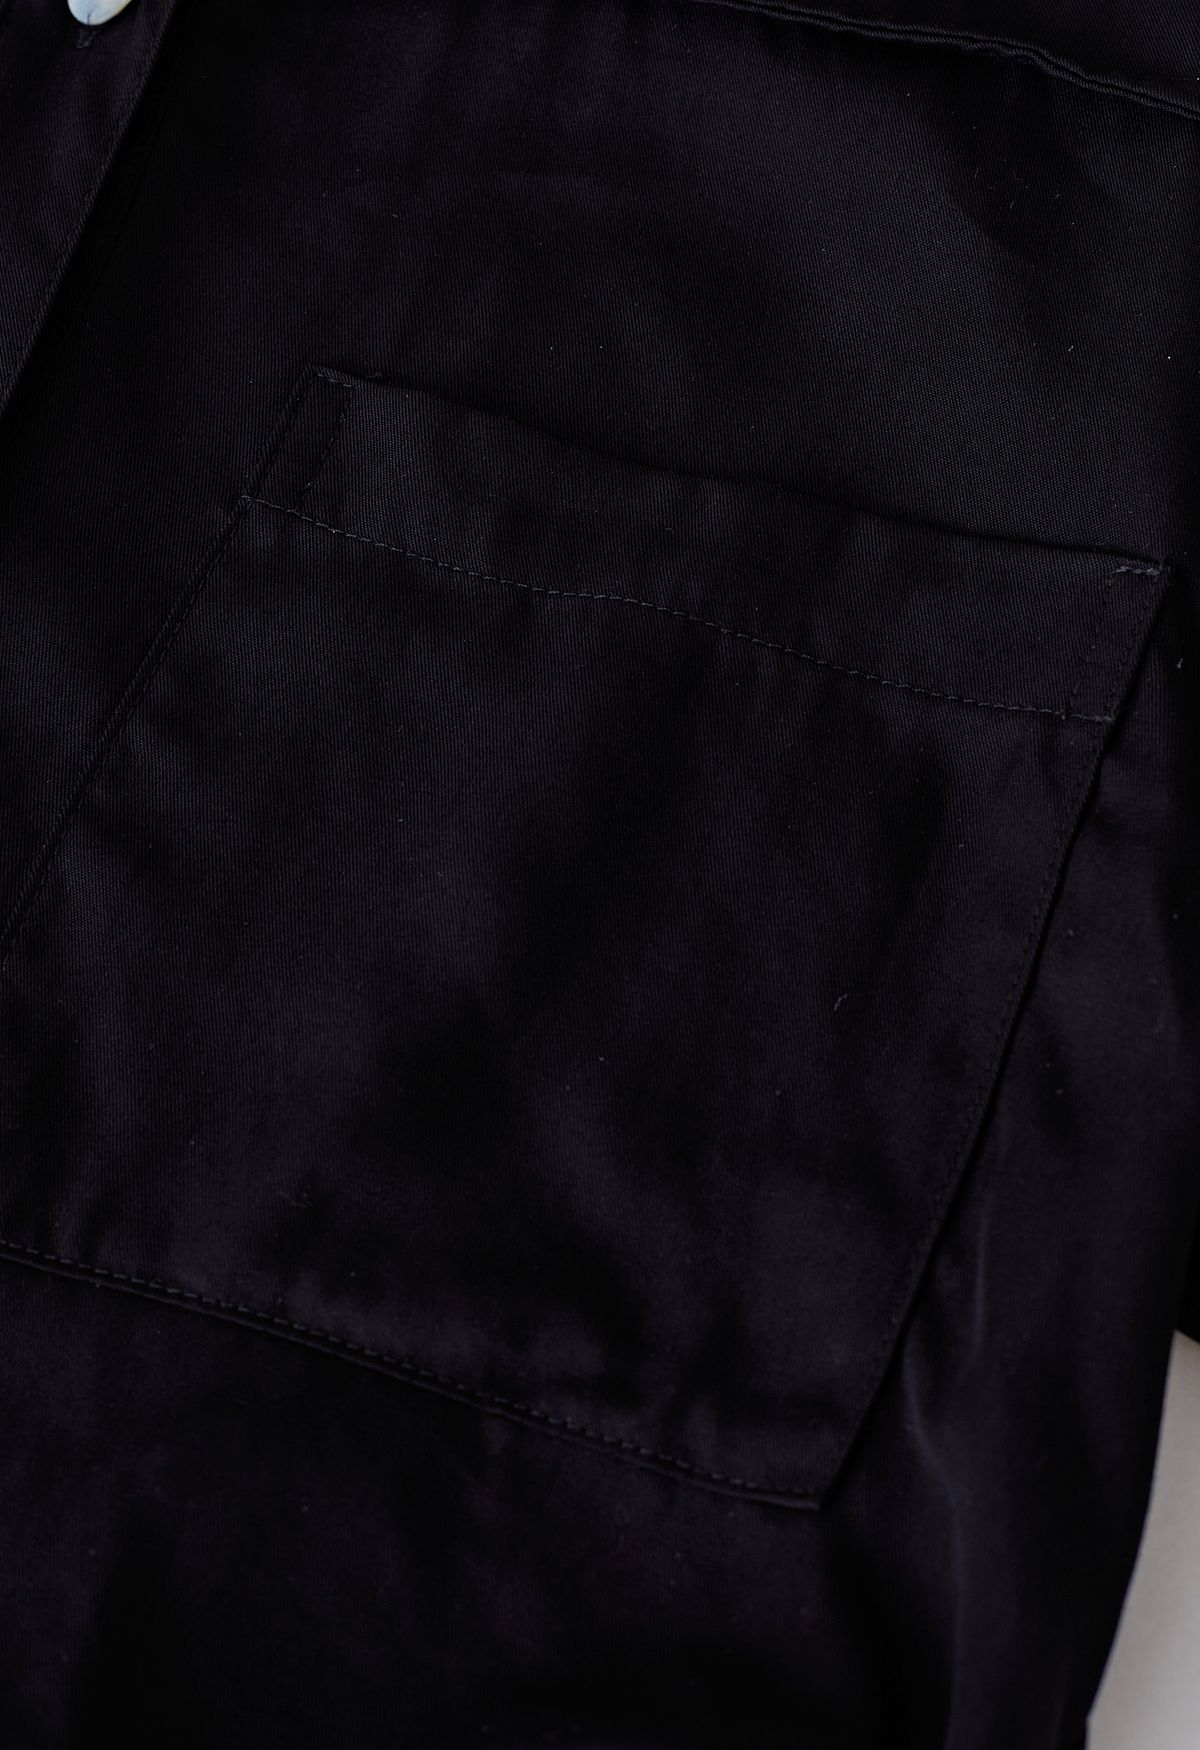 Camisa de manga corta con bolsillo y botones en negro